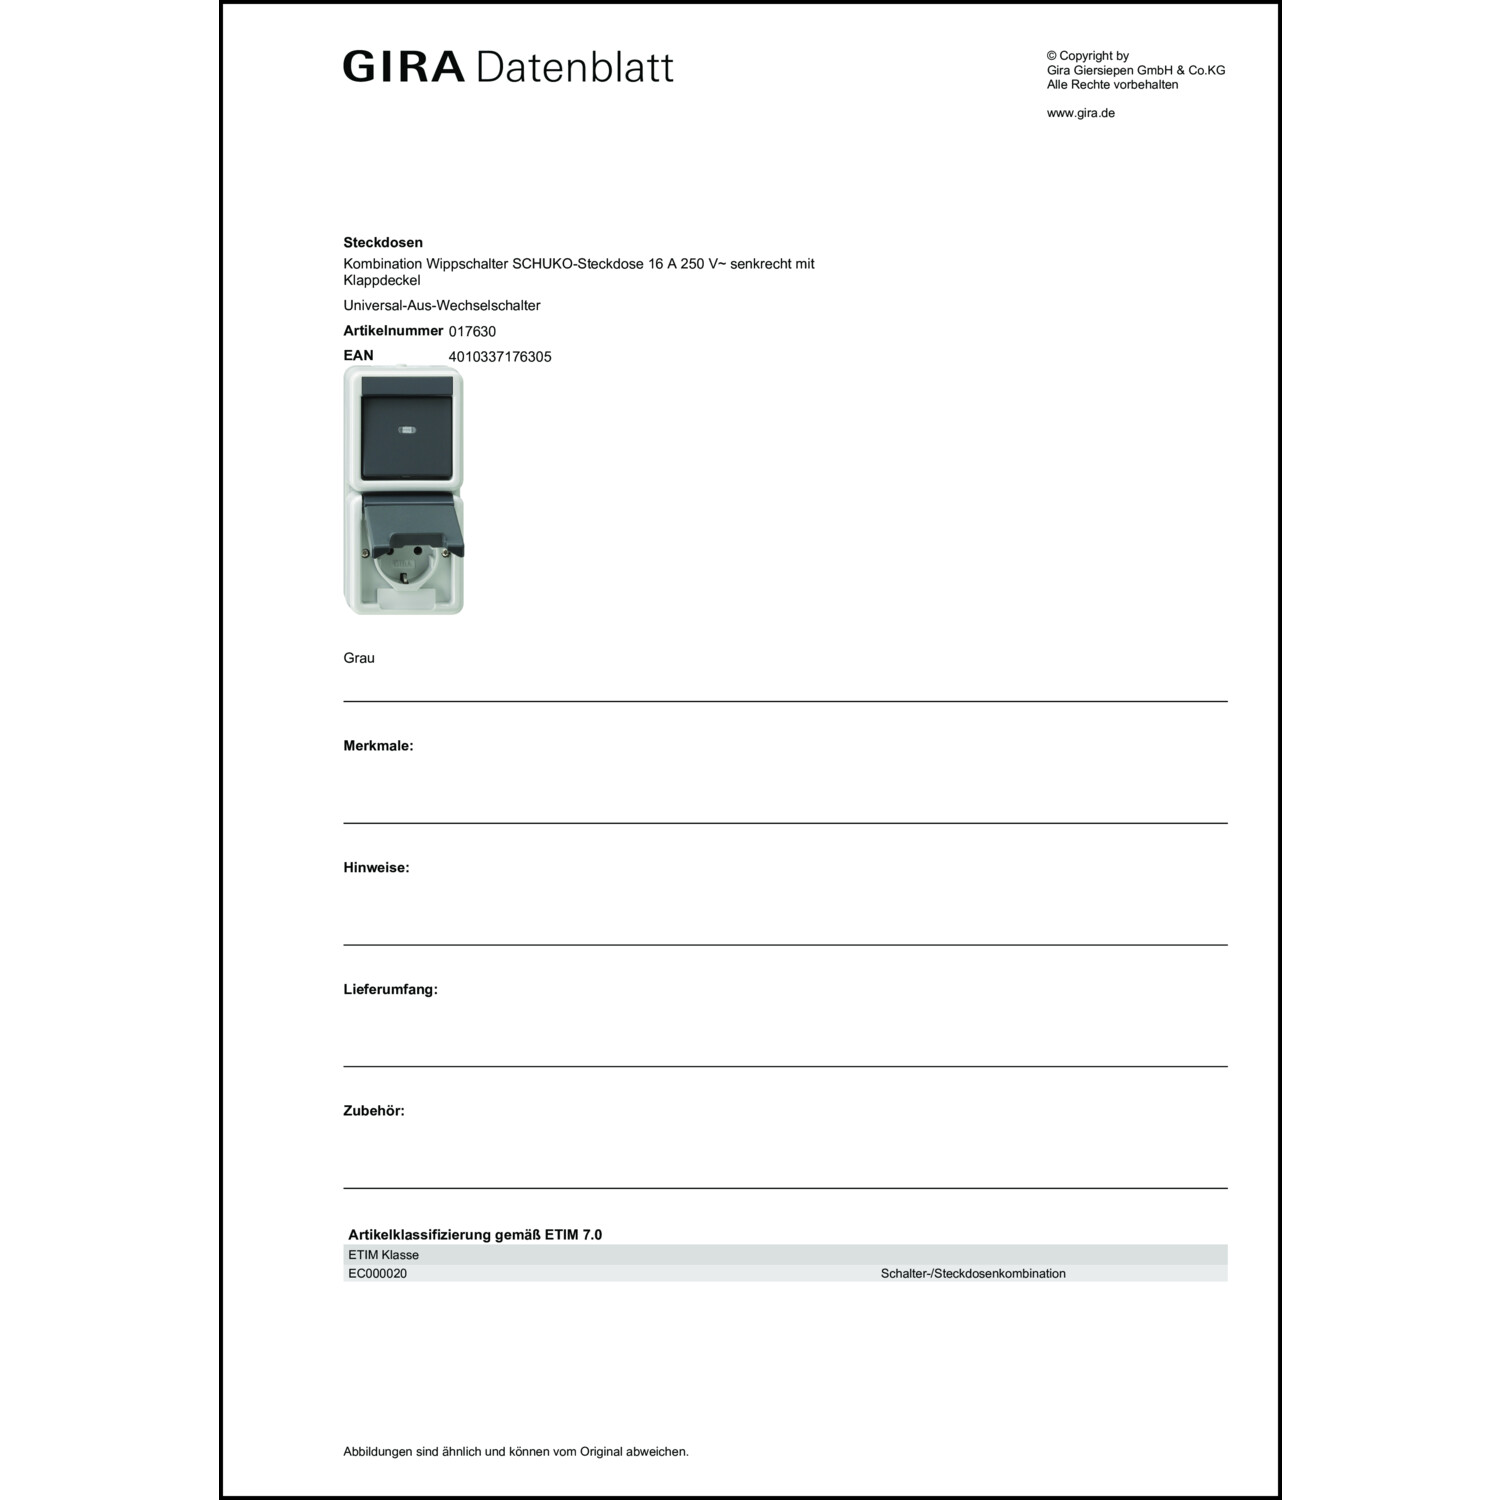 Gira 017630 Steckdose m.Wechselschalter grau WG AP IP44 Kombination senkrecht